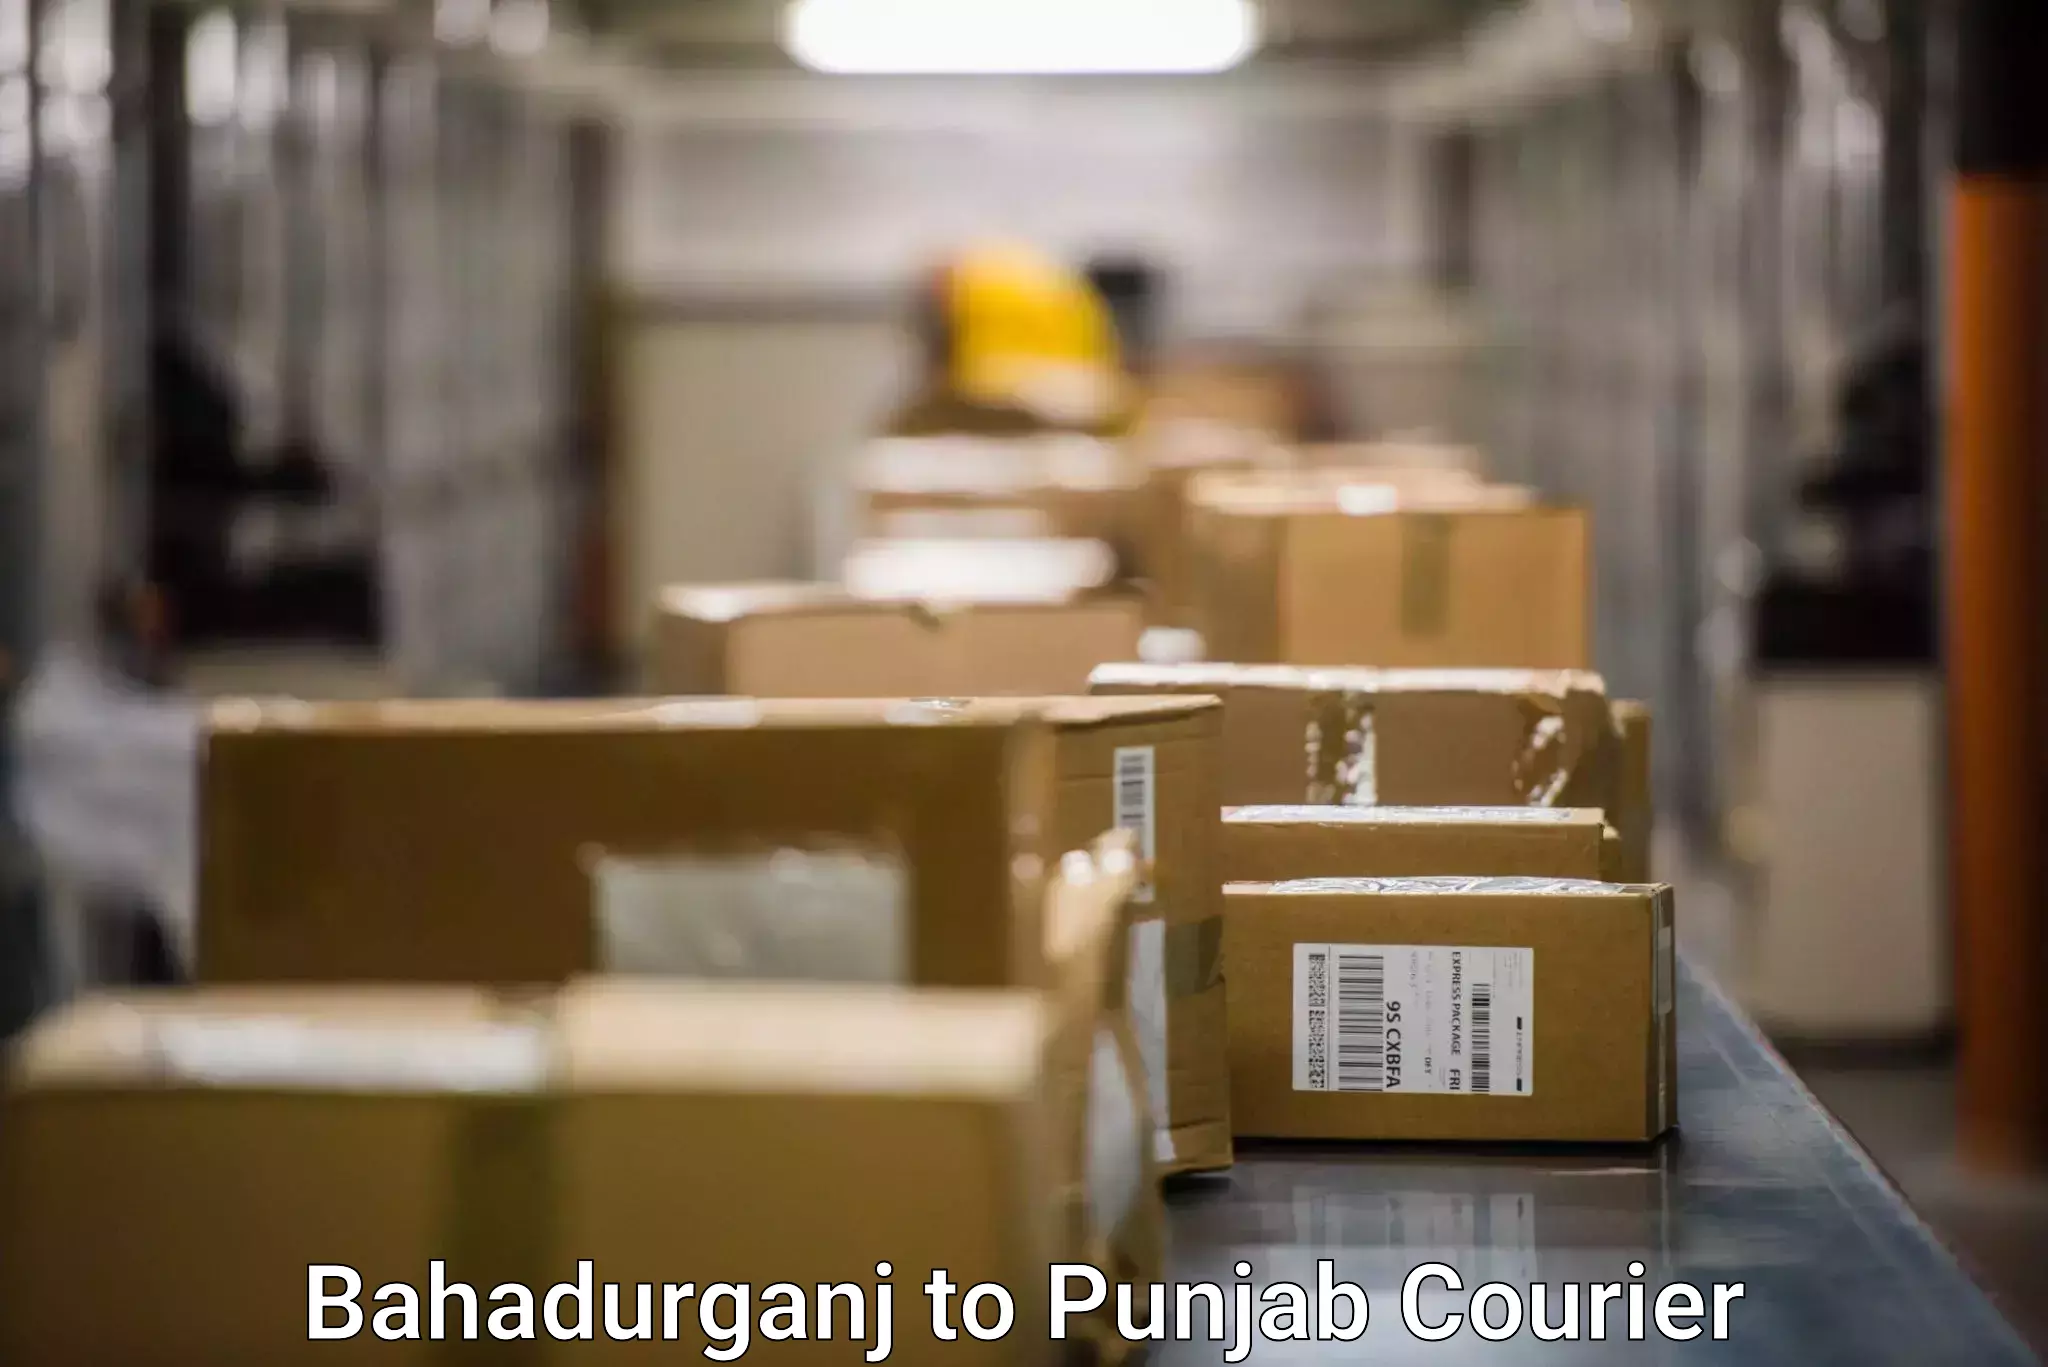 Express mail solutions Bahadurganj to Punjab